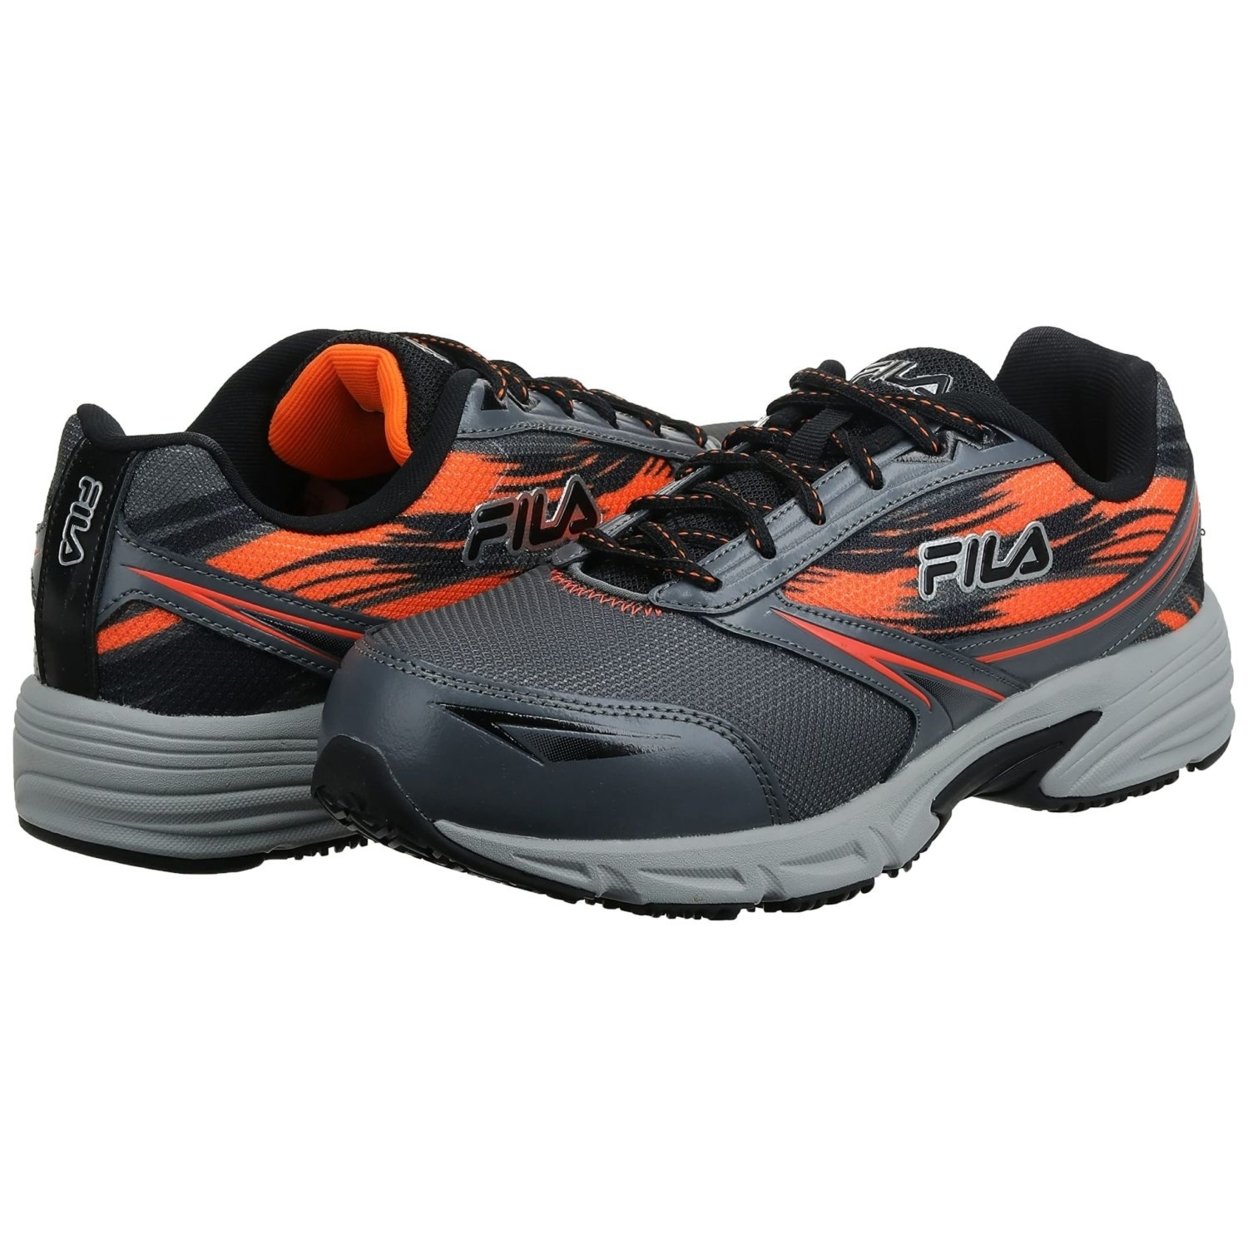 Fila Menâs Memory Meiera 2 Slip Resistant And Composite Toe Work Shoe CSRK/BLK/VORN - Castlerock/Black/Vibrant Orange, 9.5